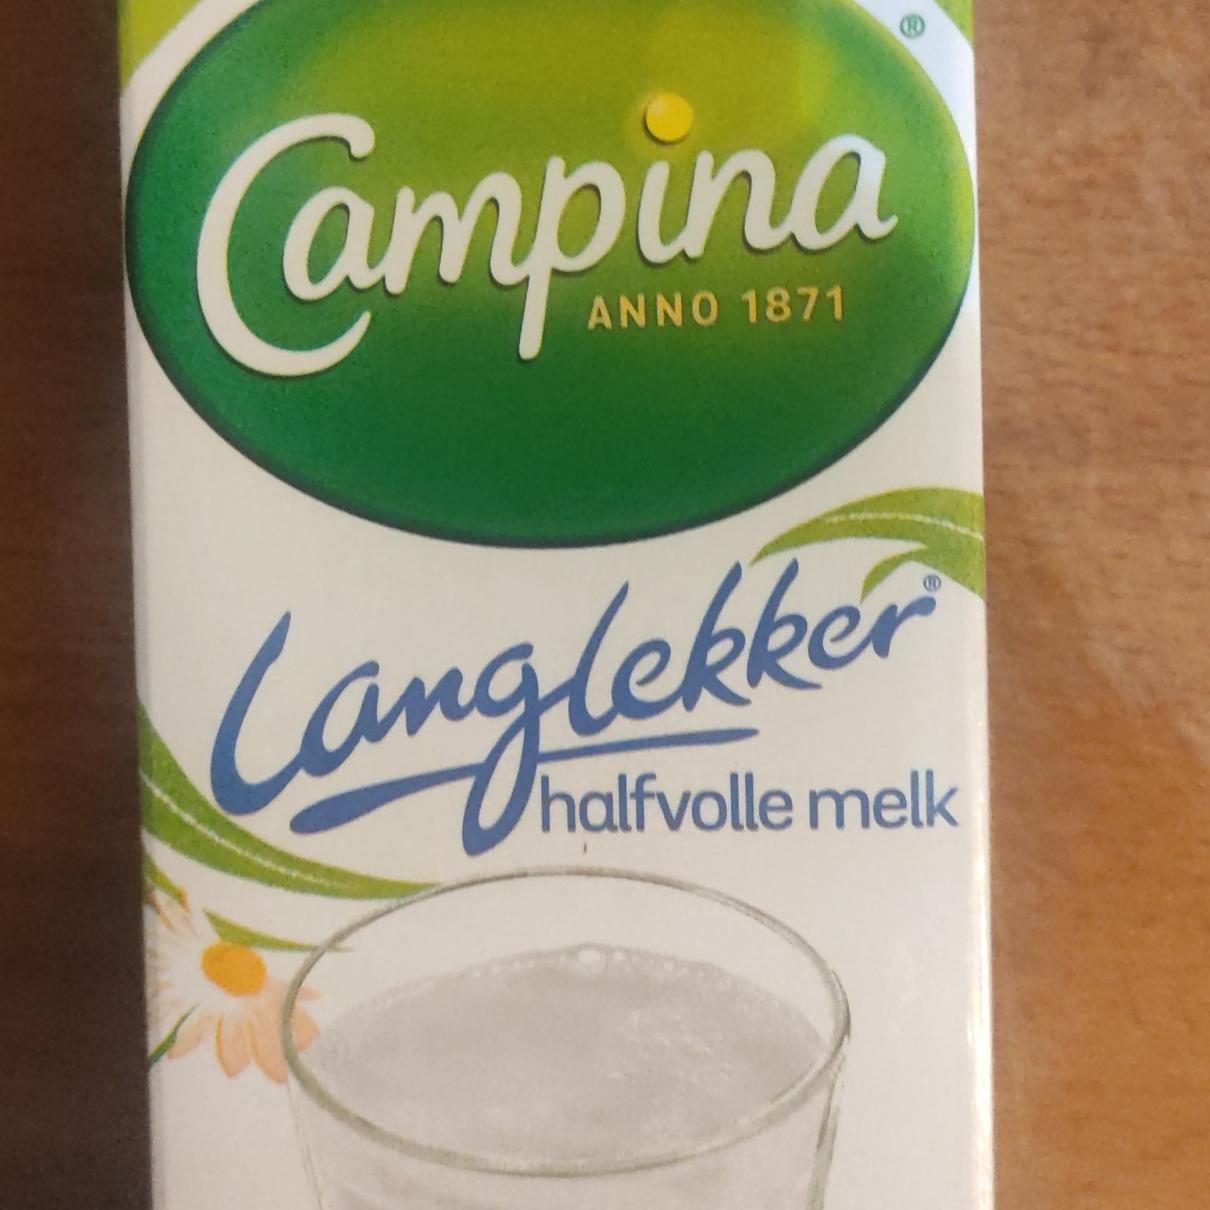 Фото - Обезжиренное молоко halfvole milk Campina